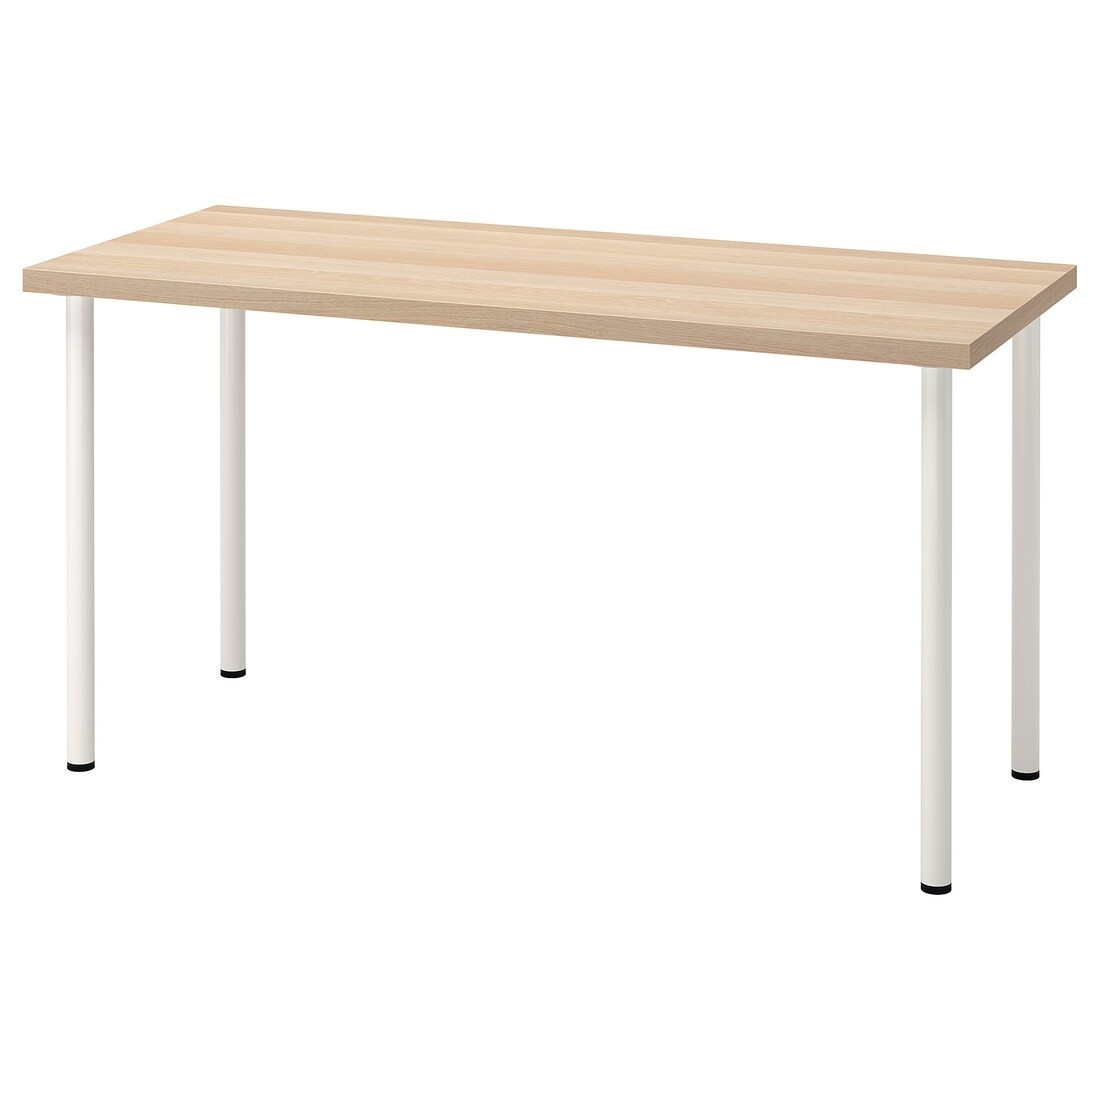 IKEA LAGKAPTEN ЛАГКАПТЕН / ADILS АДИЛЬС Письменный стол, под беленый дуб / белый, 140x60 см 99417207 994.172.07